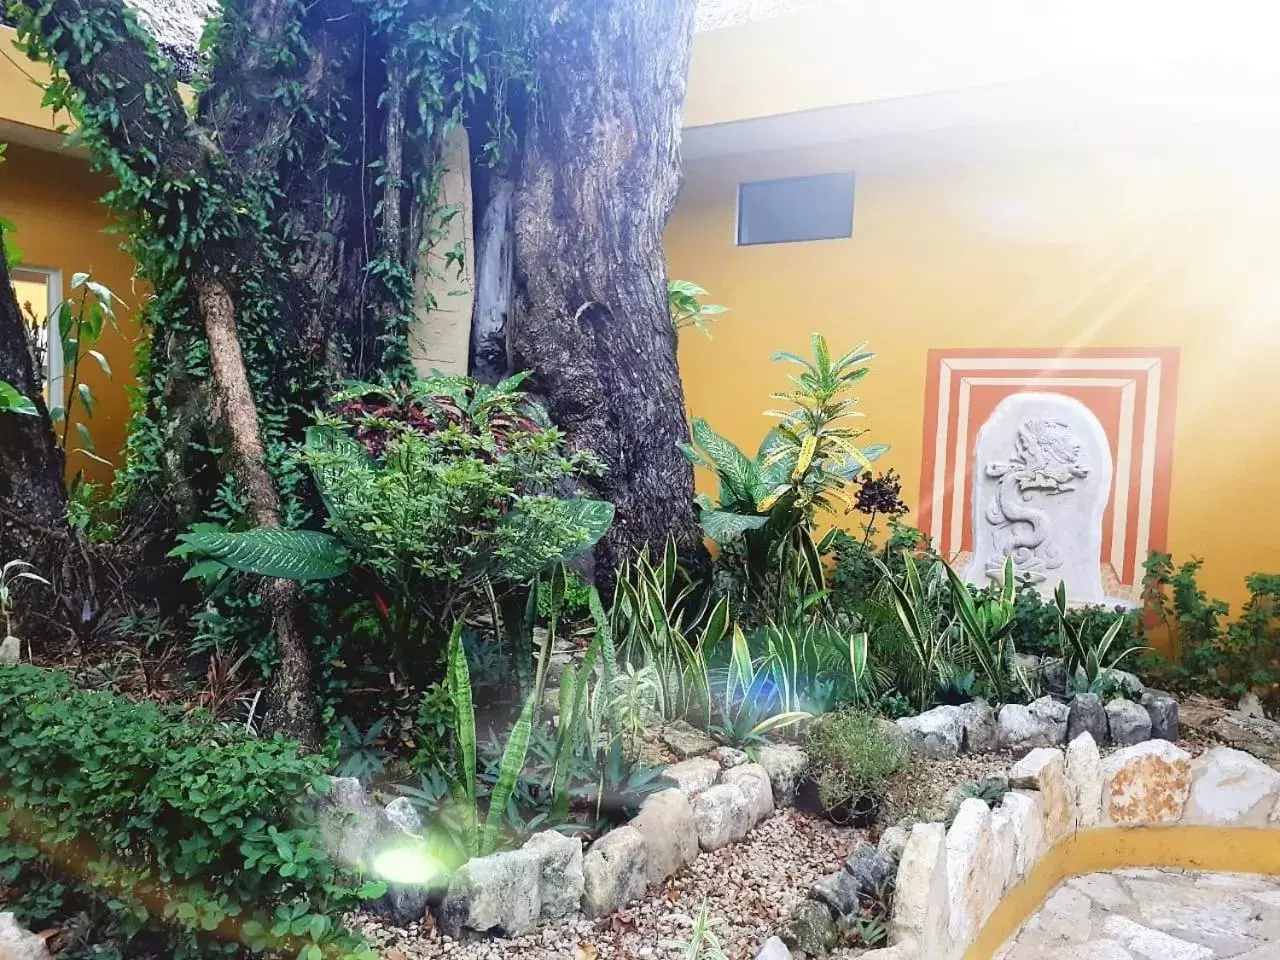 Facade/entrance in Hotel Chablis Palenque